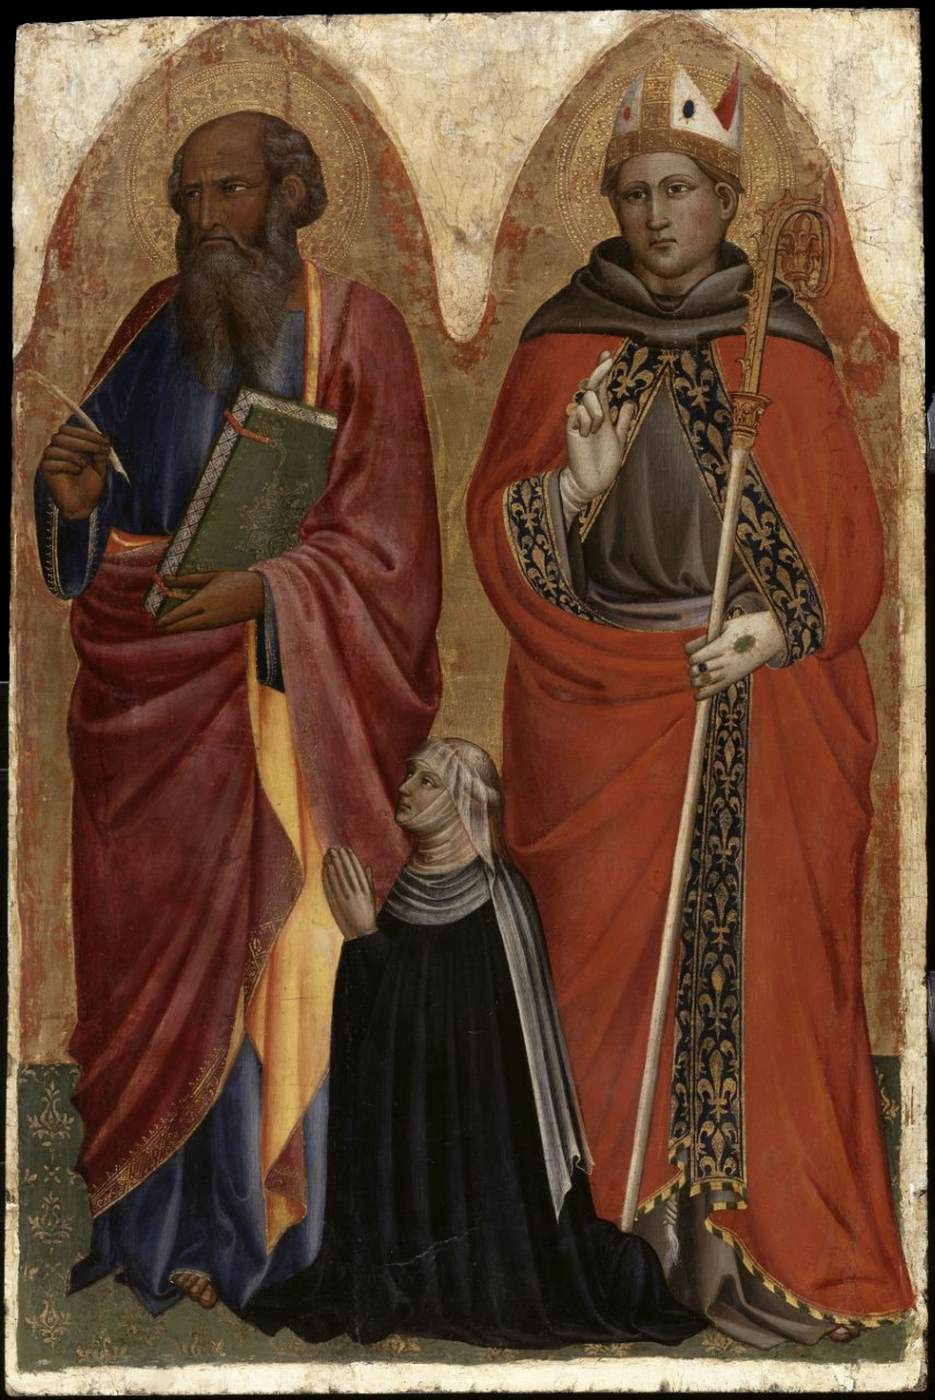 San Giovanni Evangelista e Louis de Tolosa con Catarina Dei Francei, la moglie del donatore